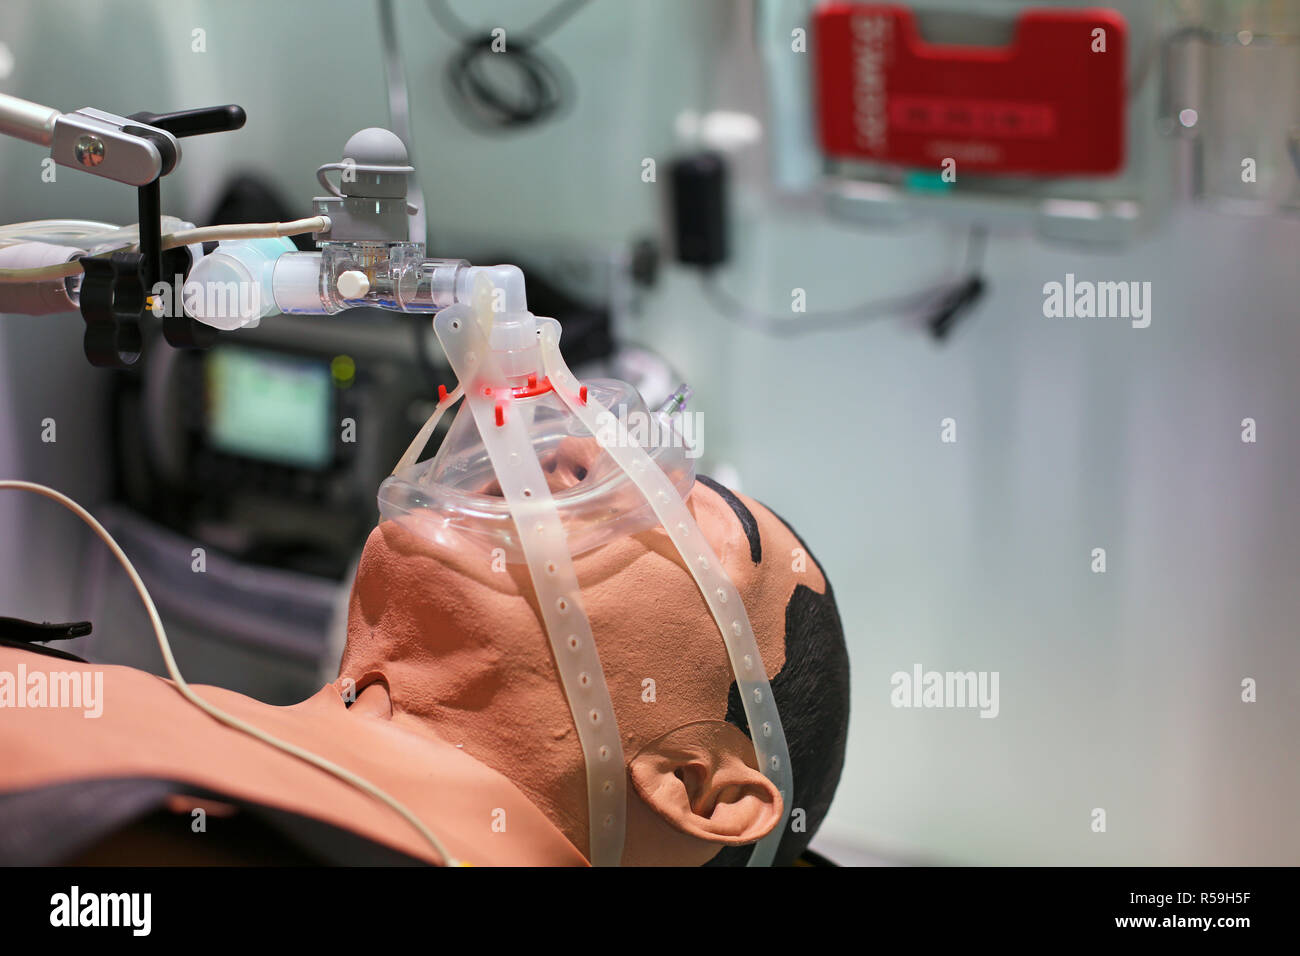 Masque respiratoire sur simulateur de patient Banque D'Images